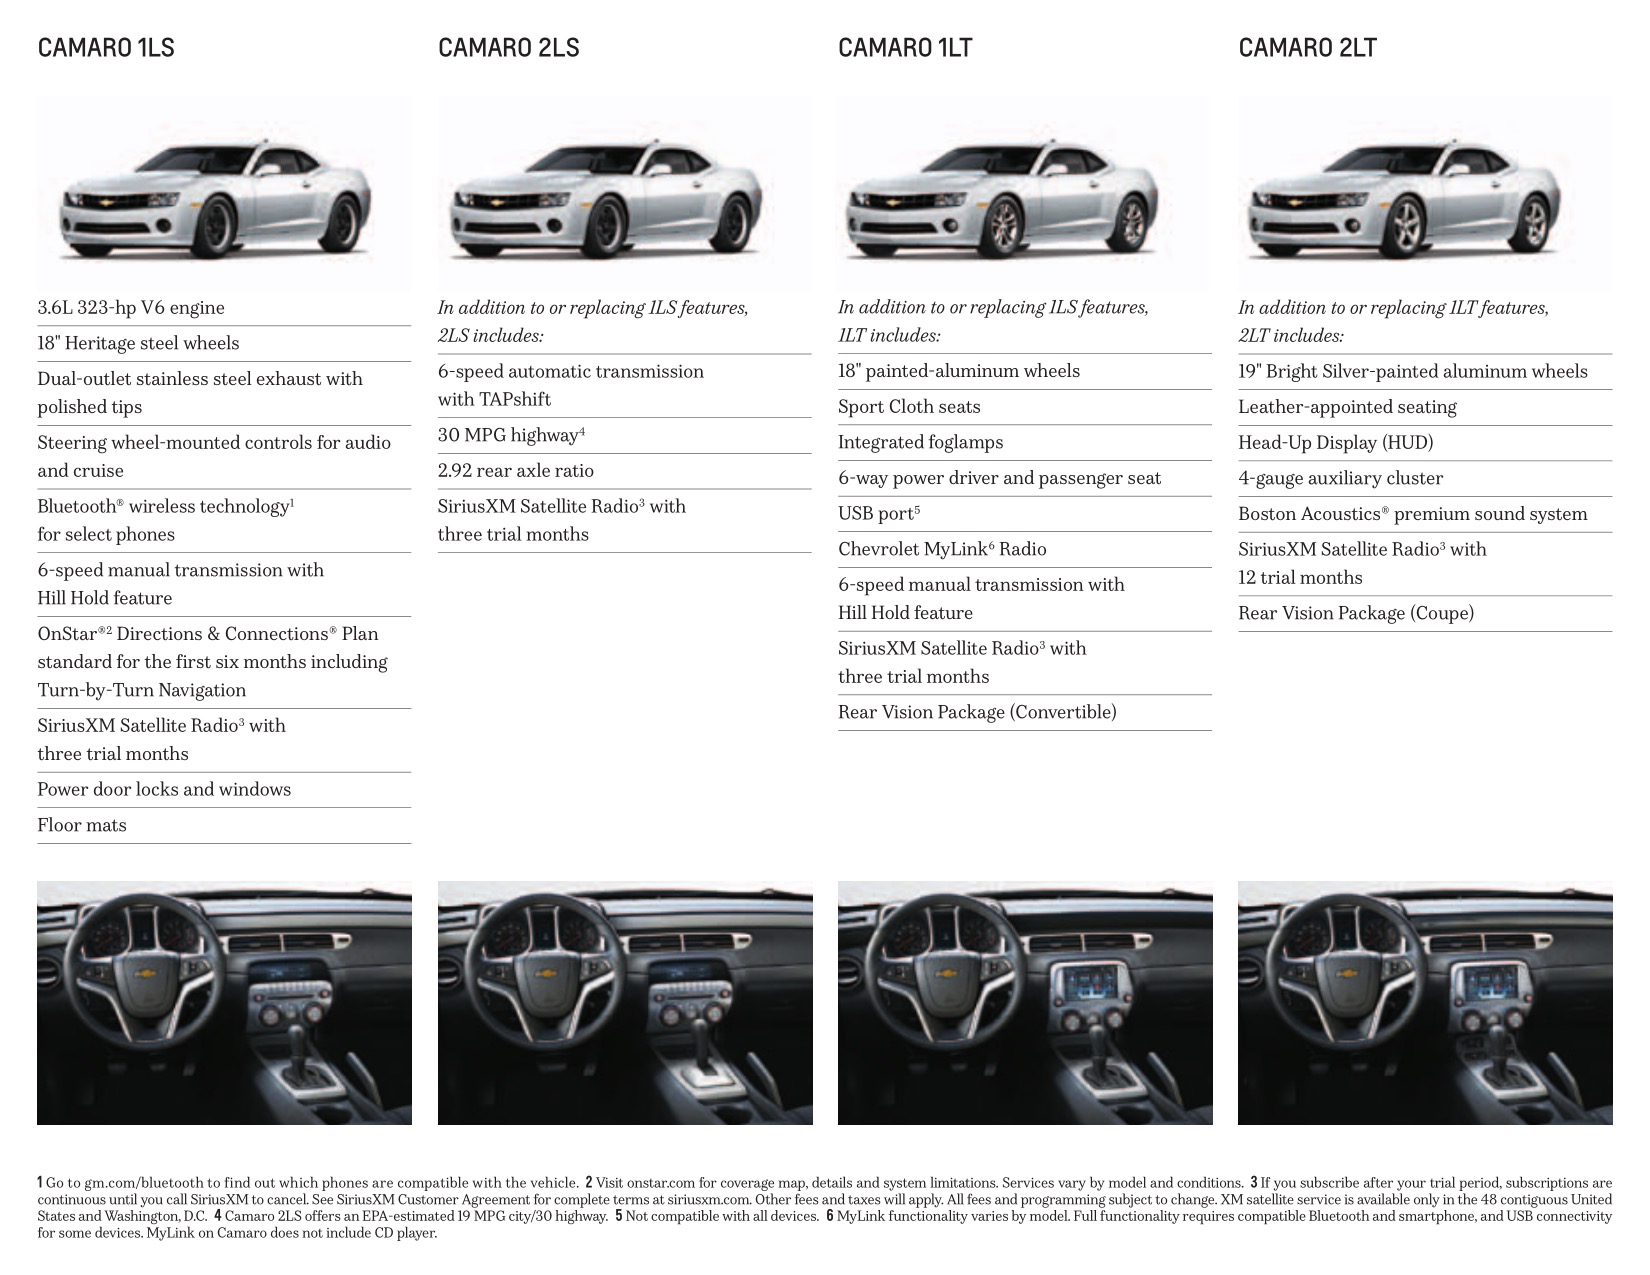 2013 Chev Camaro Brochure Page 7